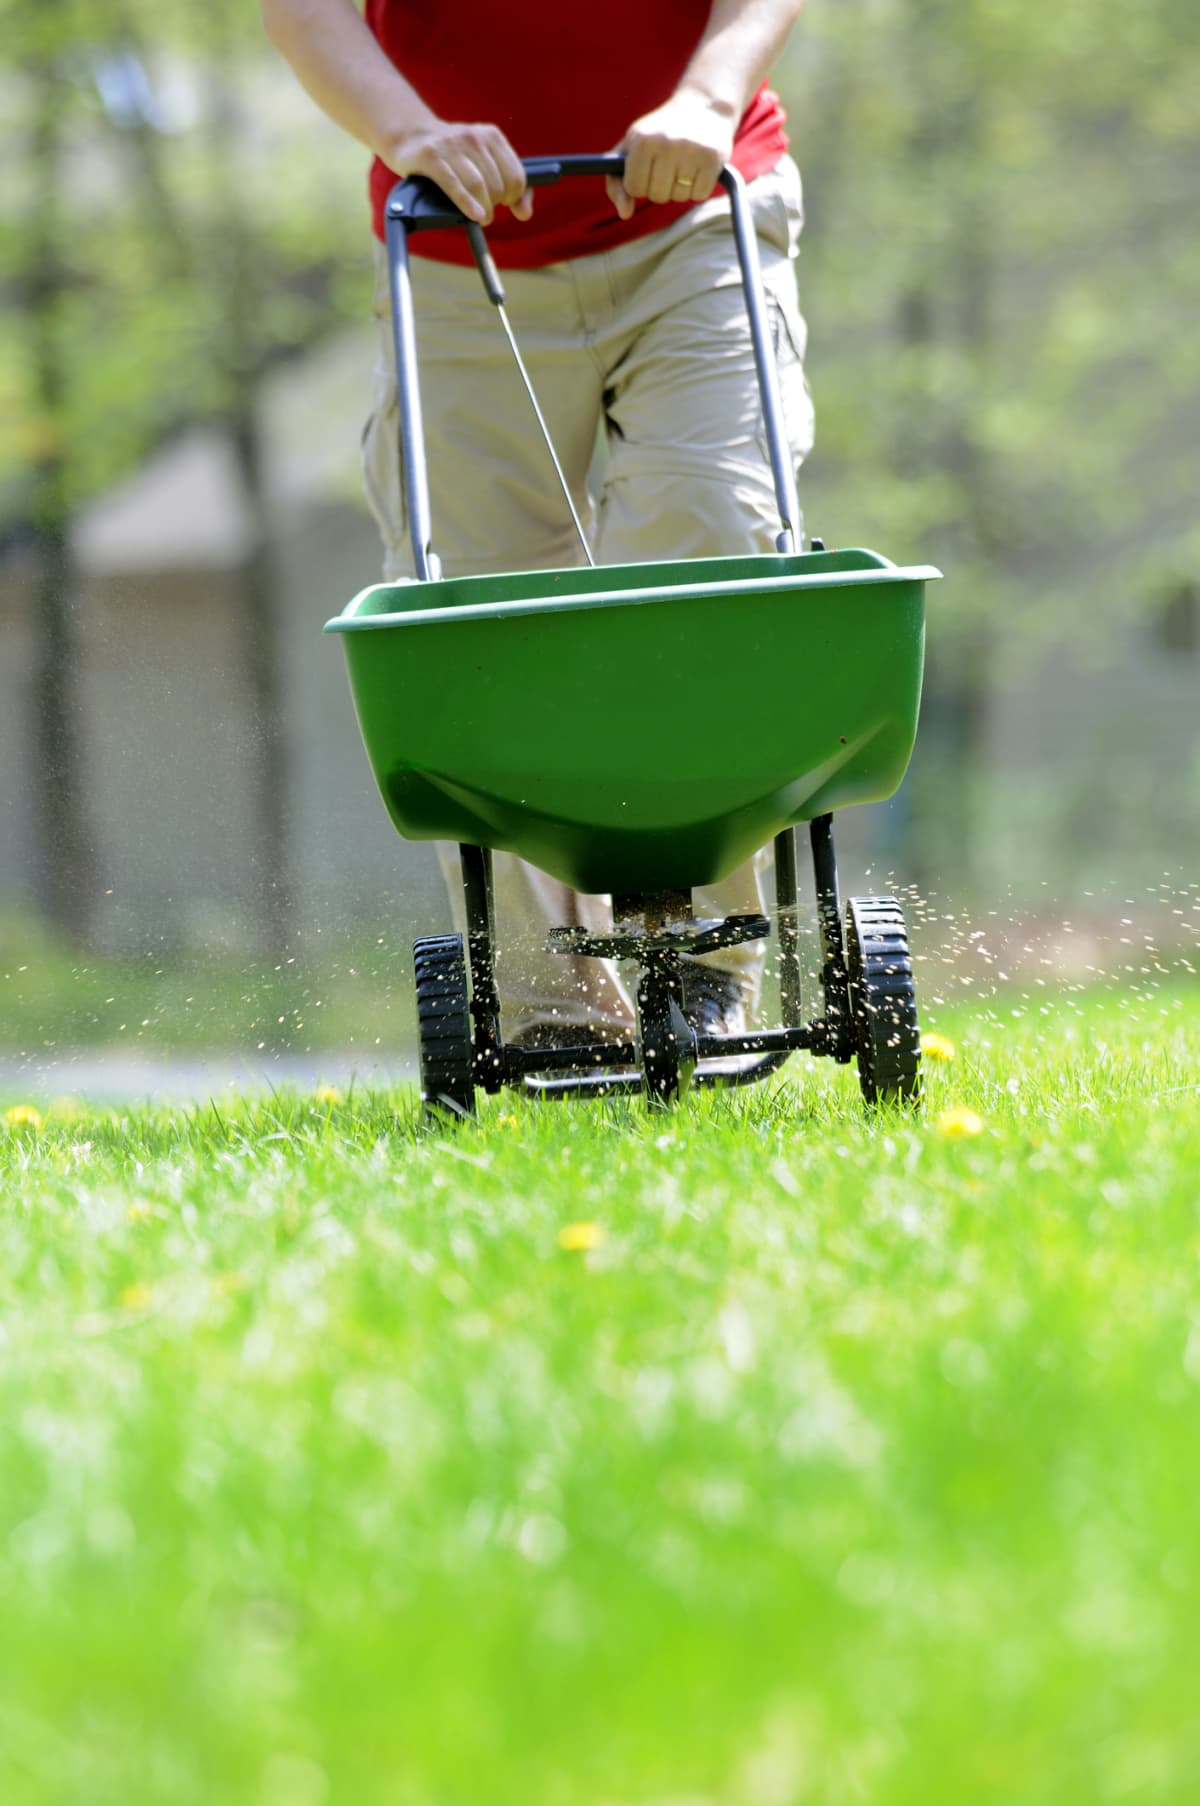 A man fertilizing a lawn with a spreader